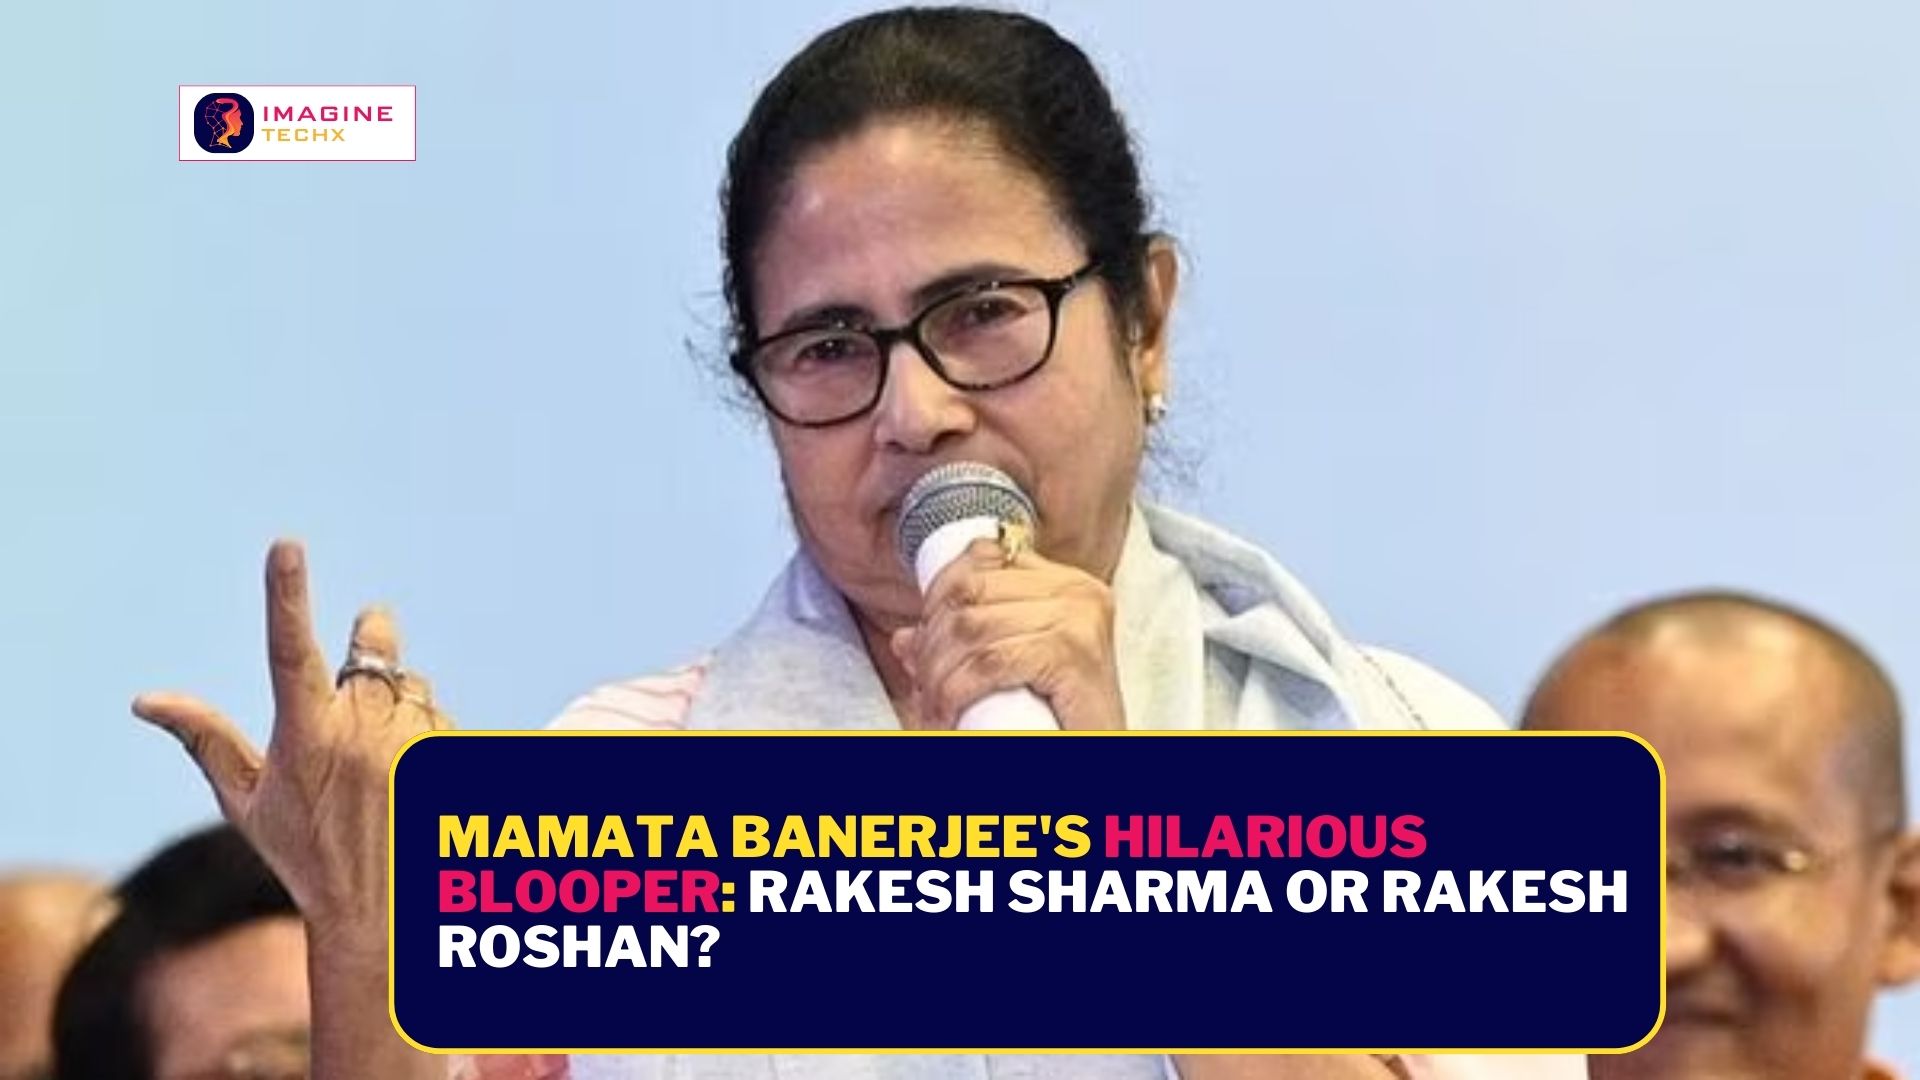 Mamata Banerjee's Hilarious Blooper: Rakesh Sharma or Rakesh Roshan?